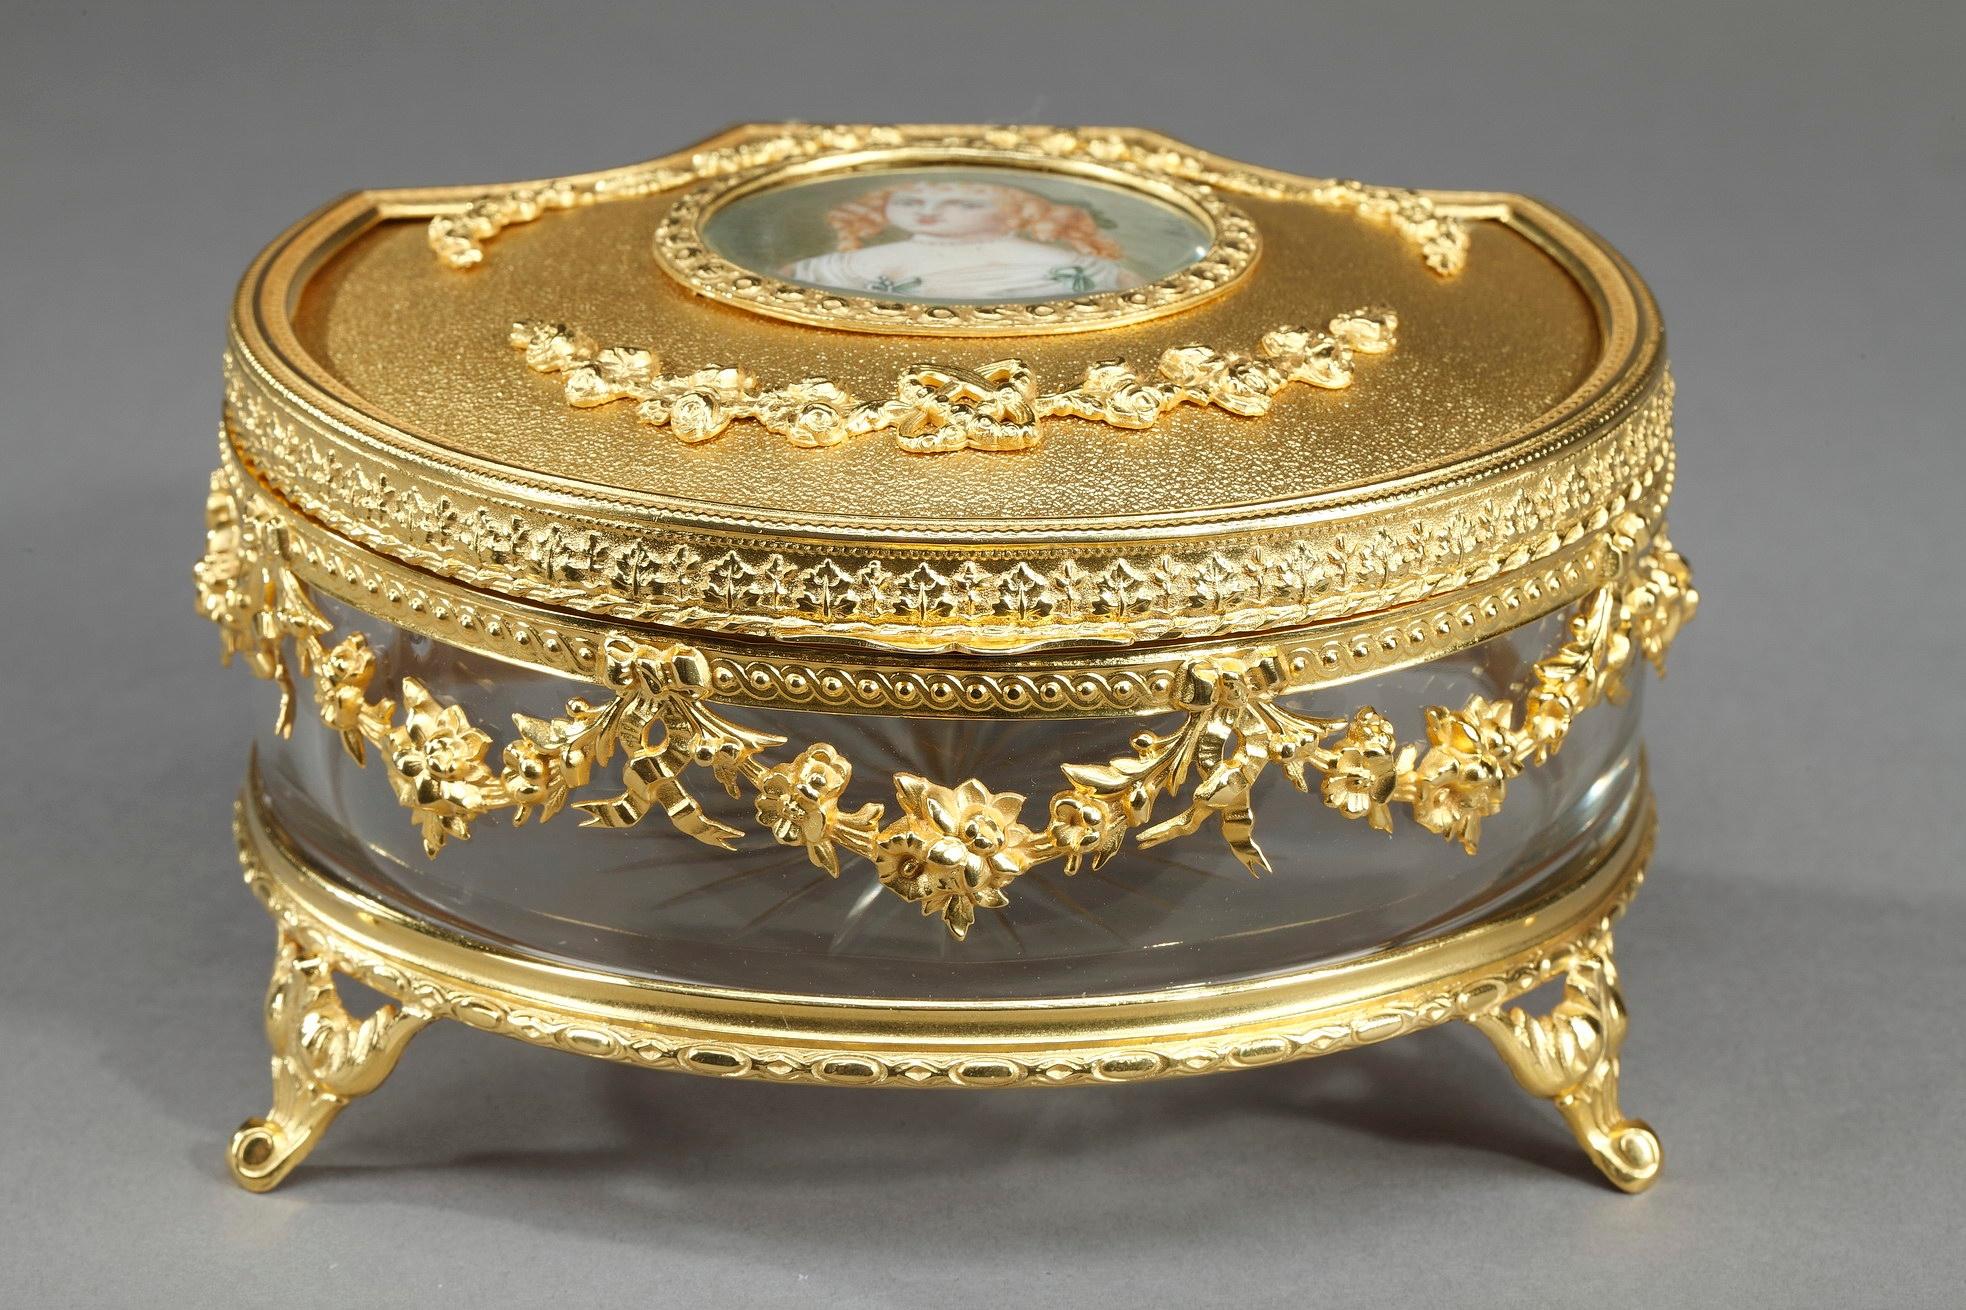 Boîte à bijoux Louis-Philippe en cristal et bronze doré. Le couvercle en bronze ciselé de guirlandes de roses est orné d'une miniature représentant Madame de Sévigné. Marie de Rabutin-Chantal, marquise de Sévigné (1626-1696) était une aristocrate et